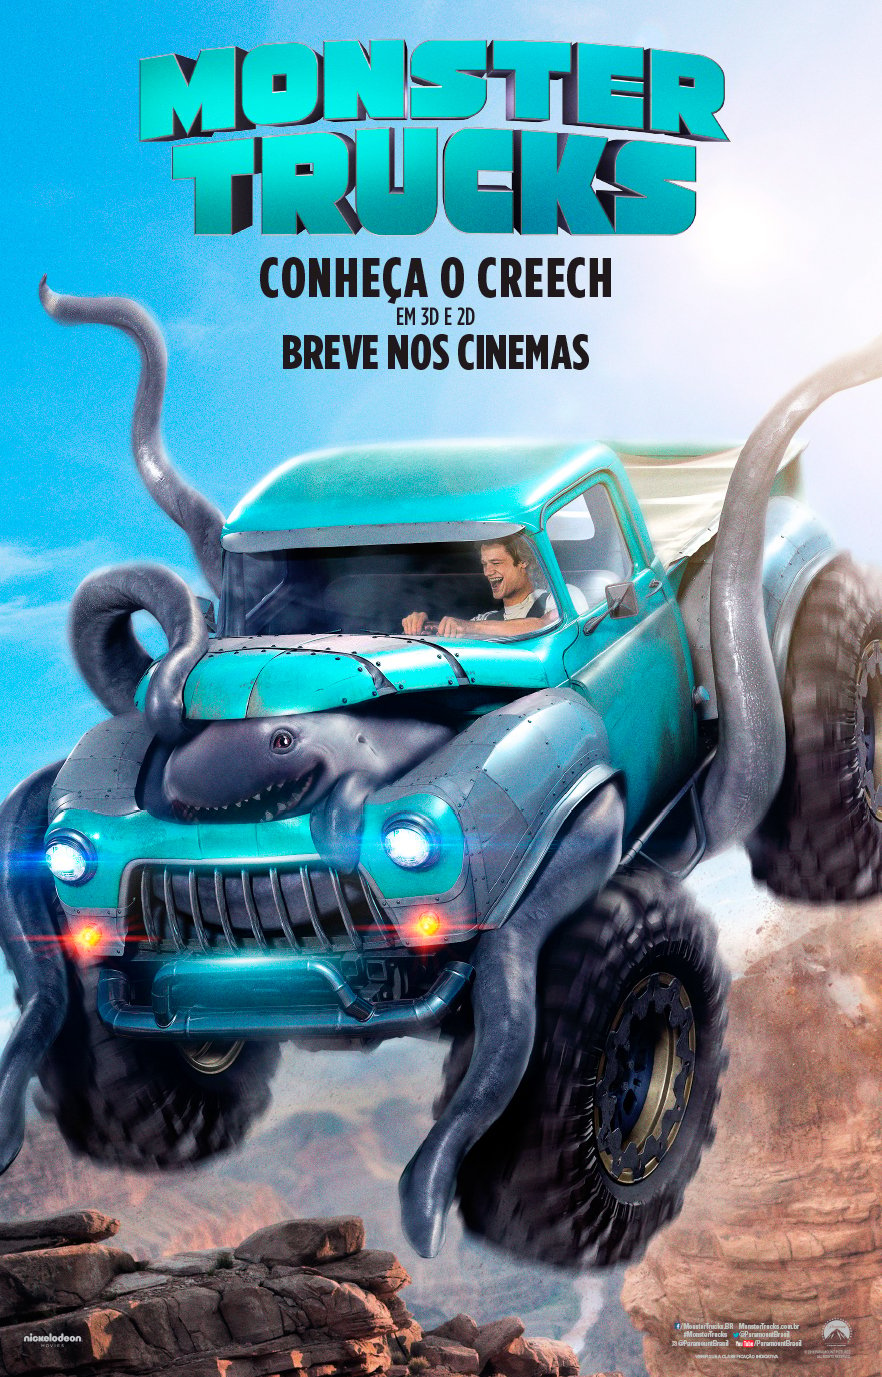 Offroaders - Jogo de Corrida de Caminhão Monstro 3D - Jogo…